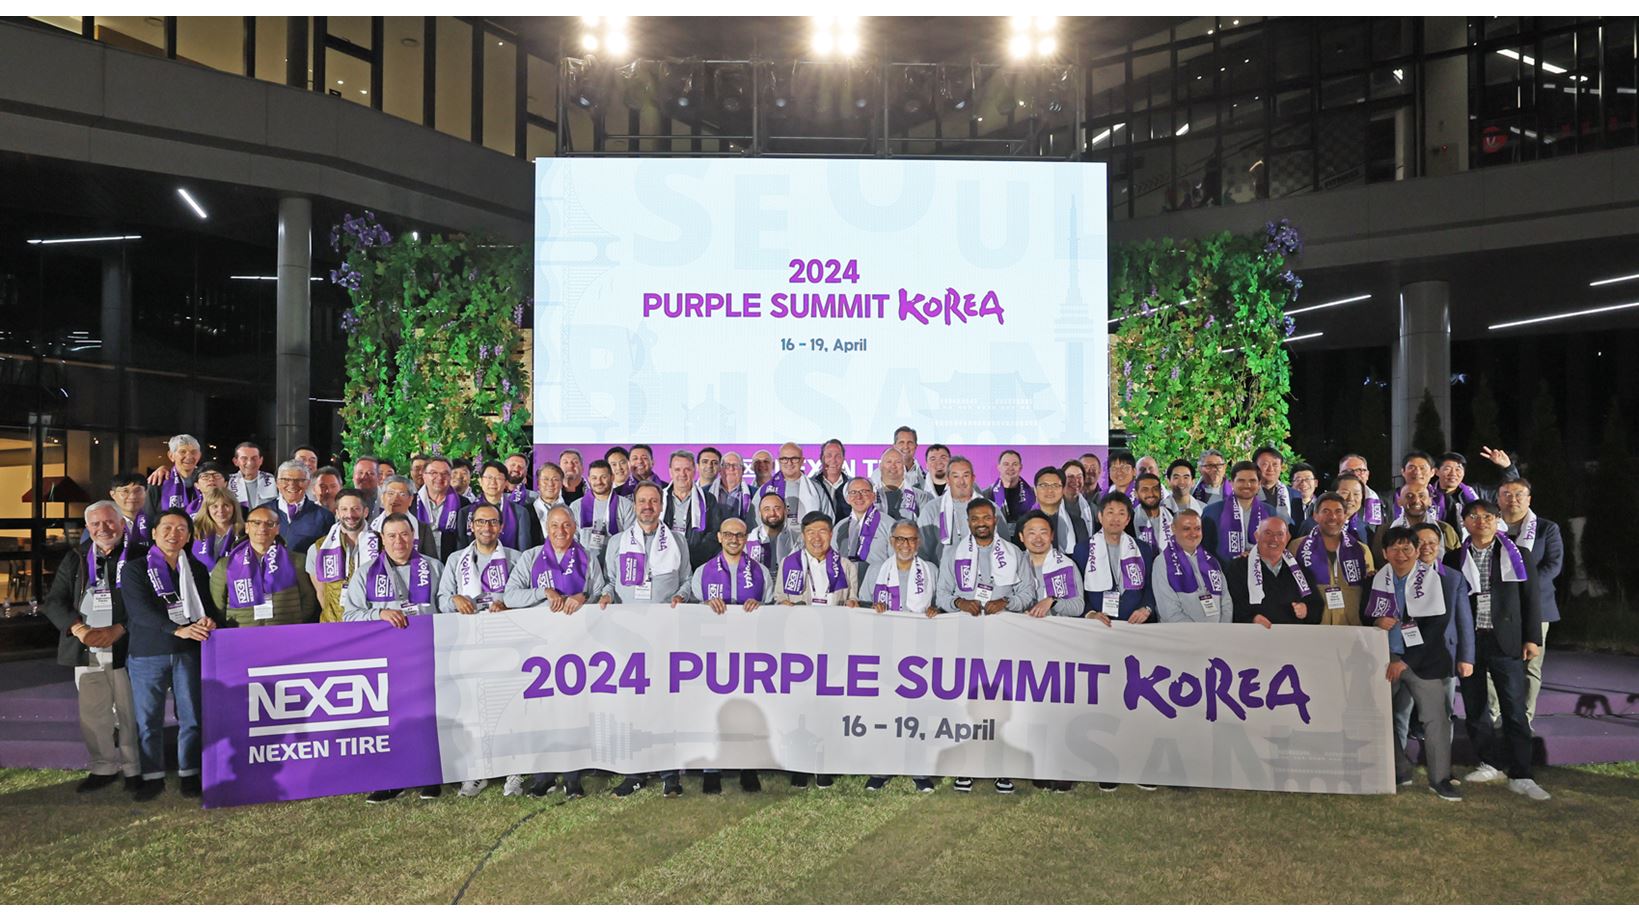 NEXEN TIRE hosts 2024 Purple Summit Korea